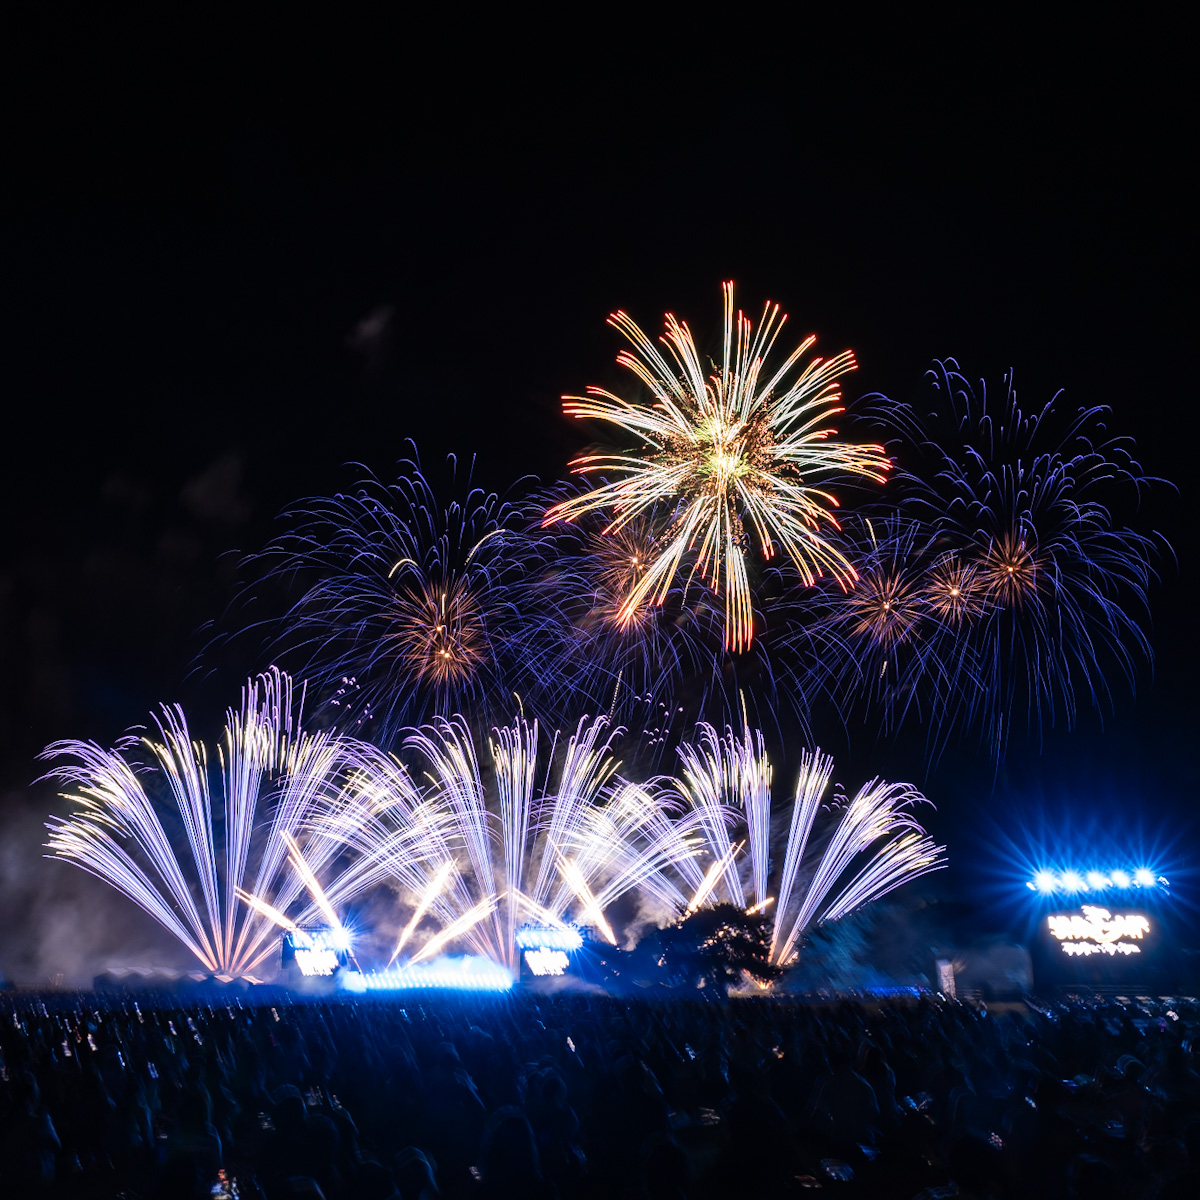 「Disney Music & Fireworks」茨城国営ひたち海浜公園 公演レポート6